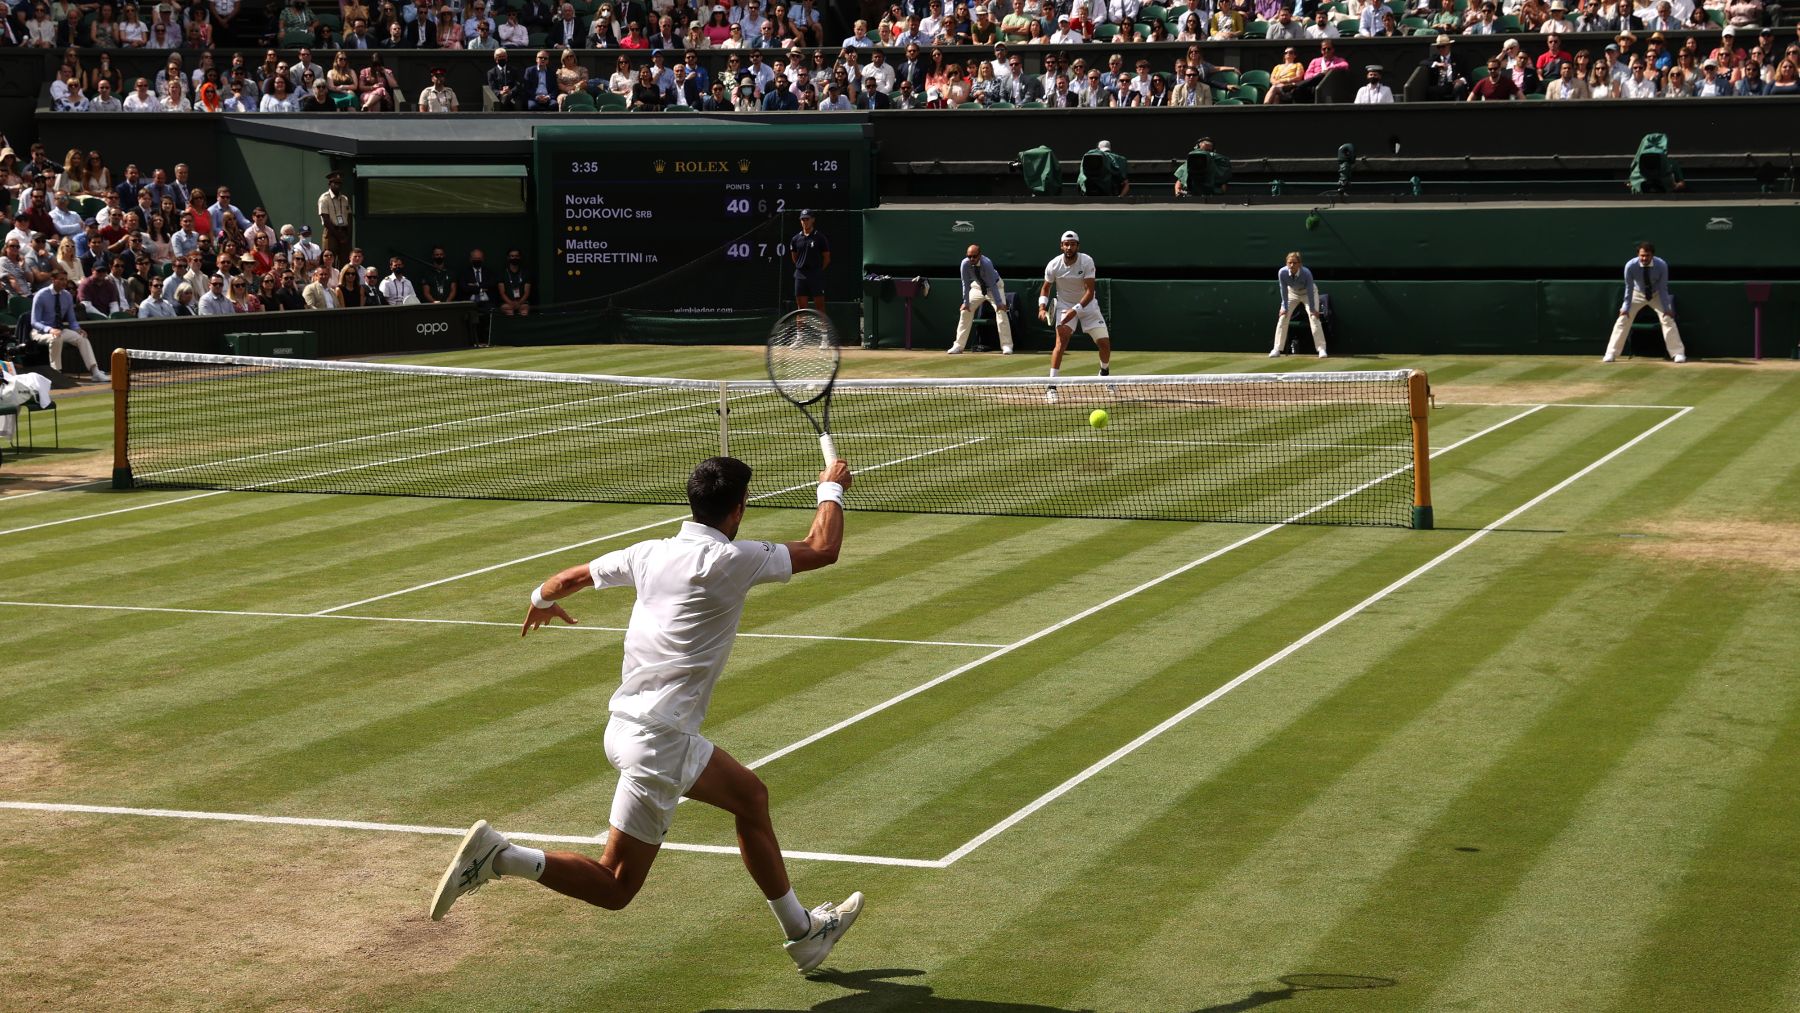 empieza Wimbledon: Fecha, horarios y todos los detalles del torneo - Infozport